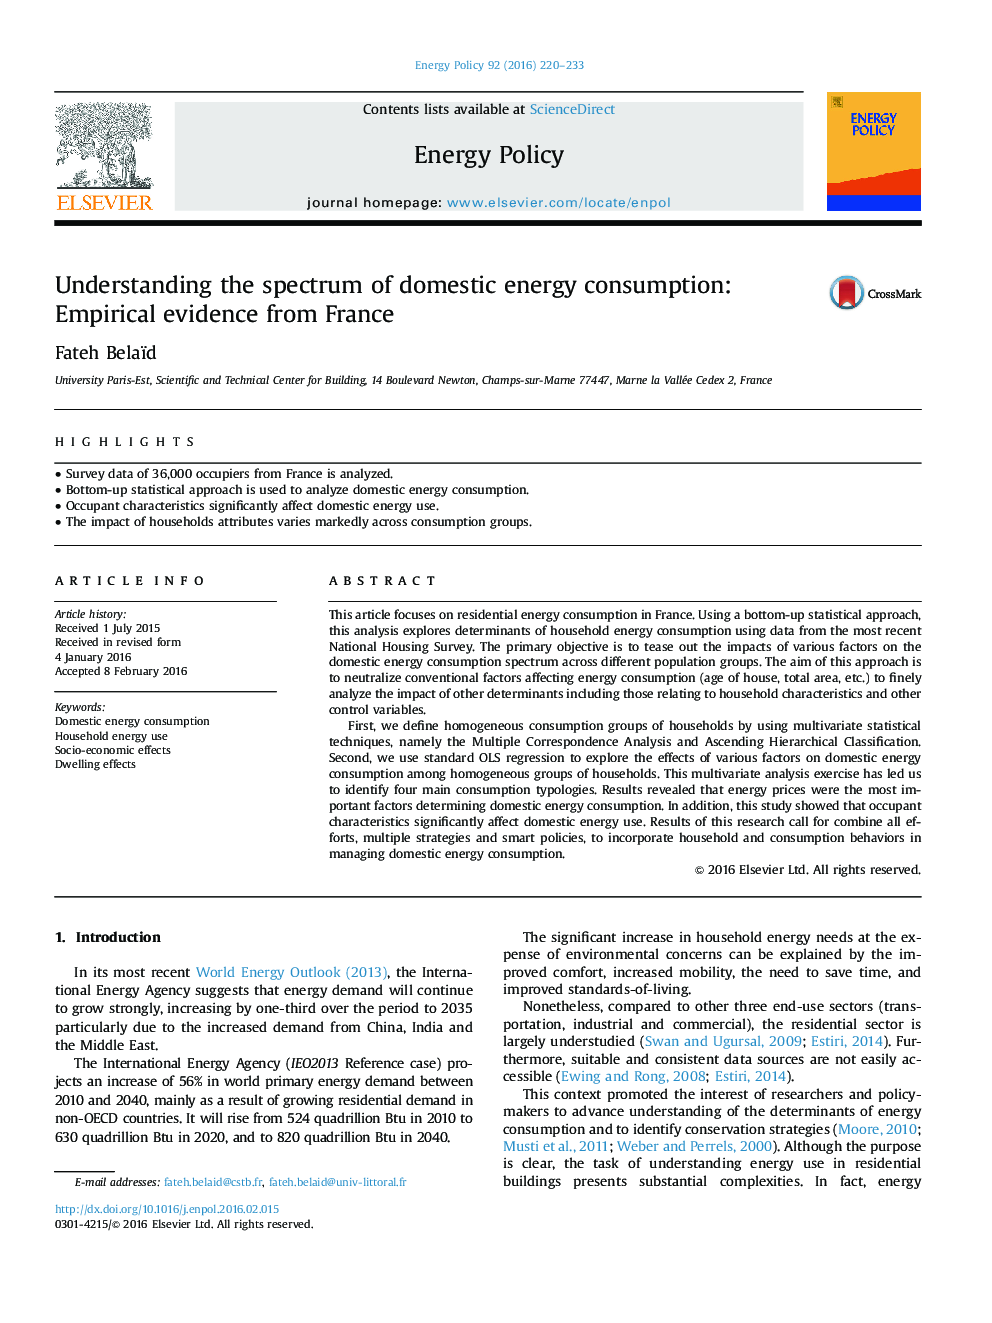 درک طیف مصرف انرژی داخلی: شواهد تجربی از فرانسه 